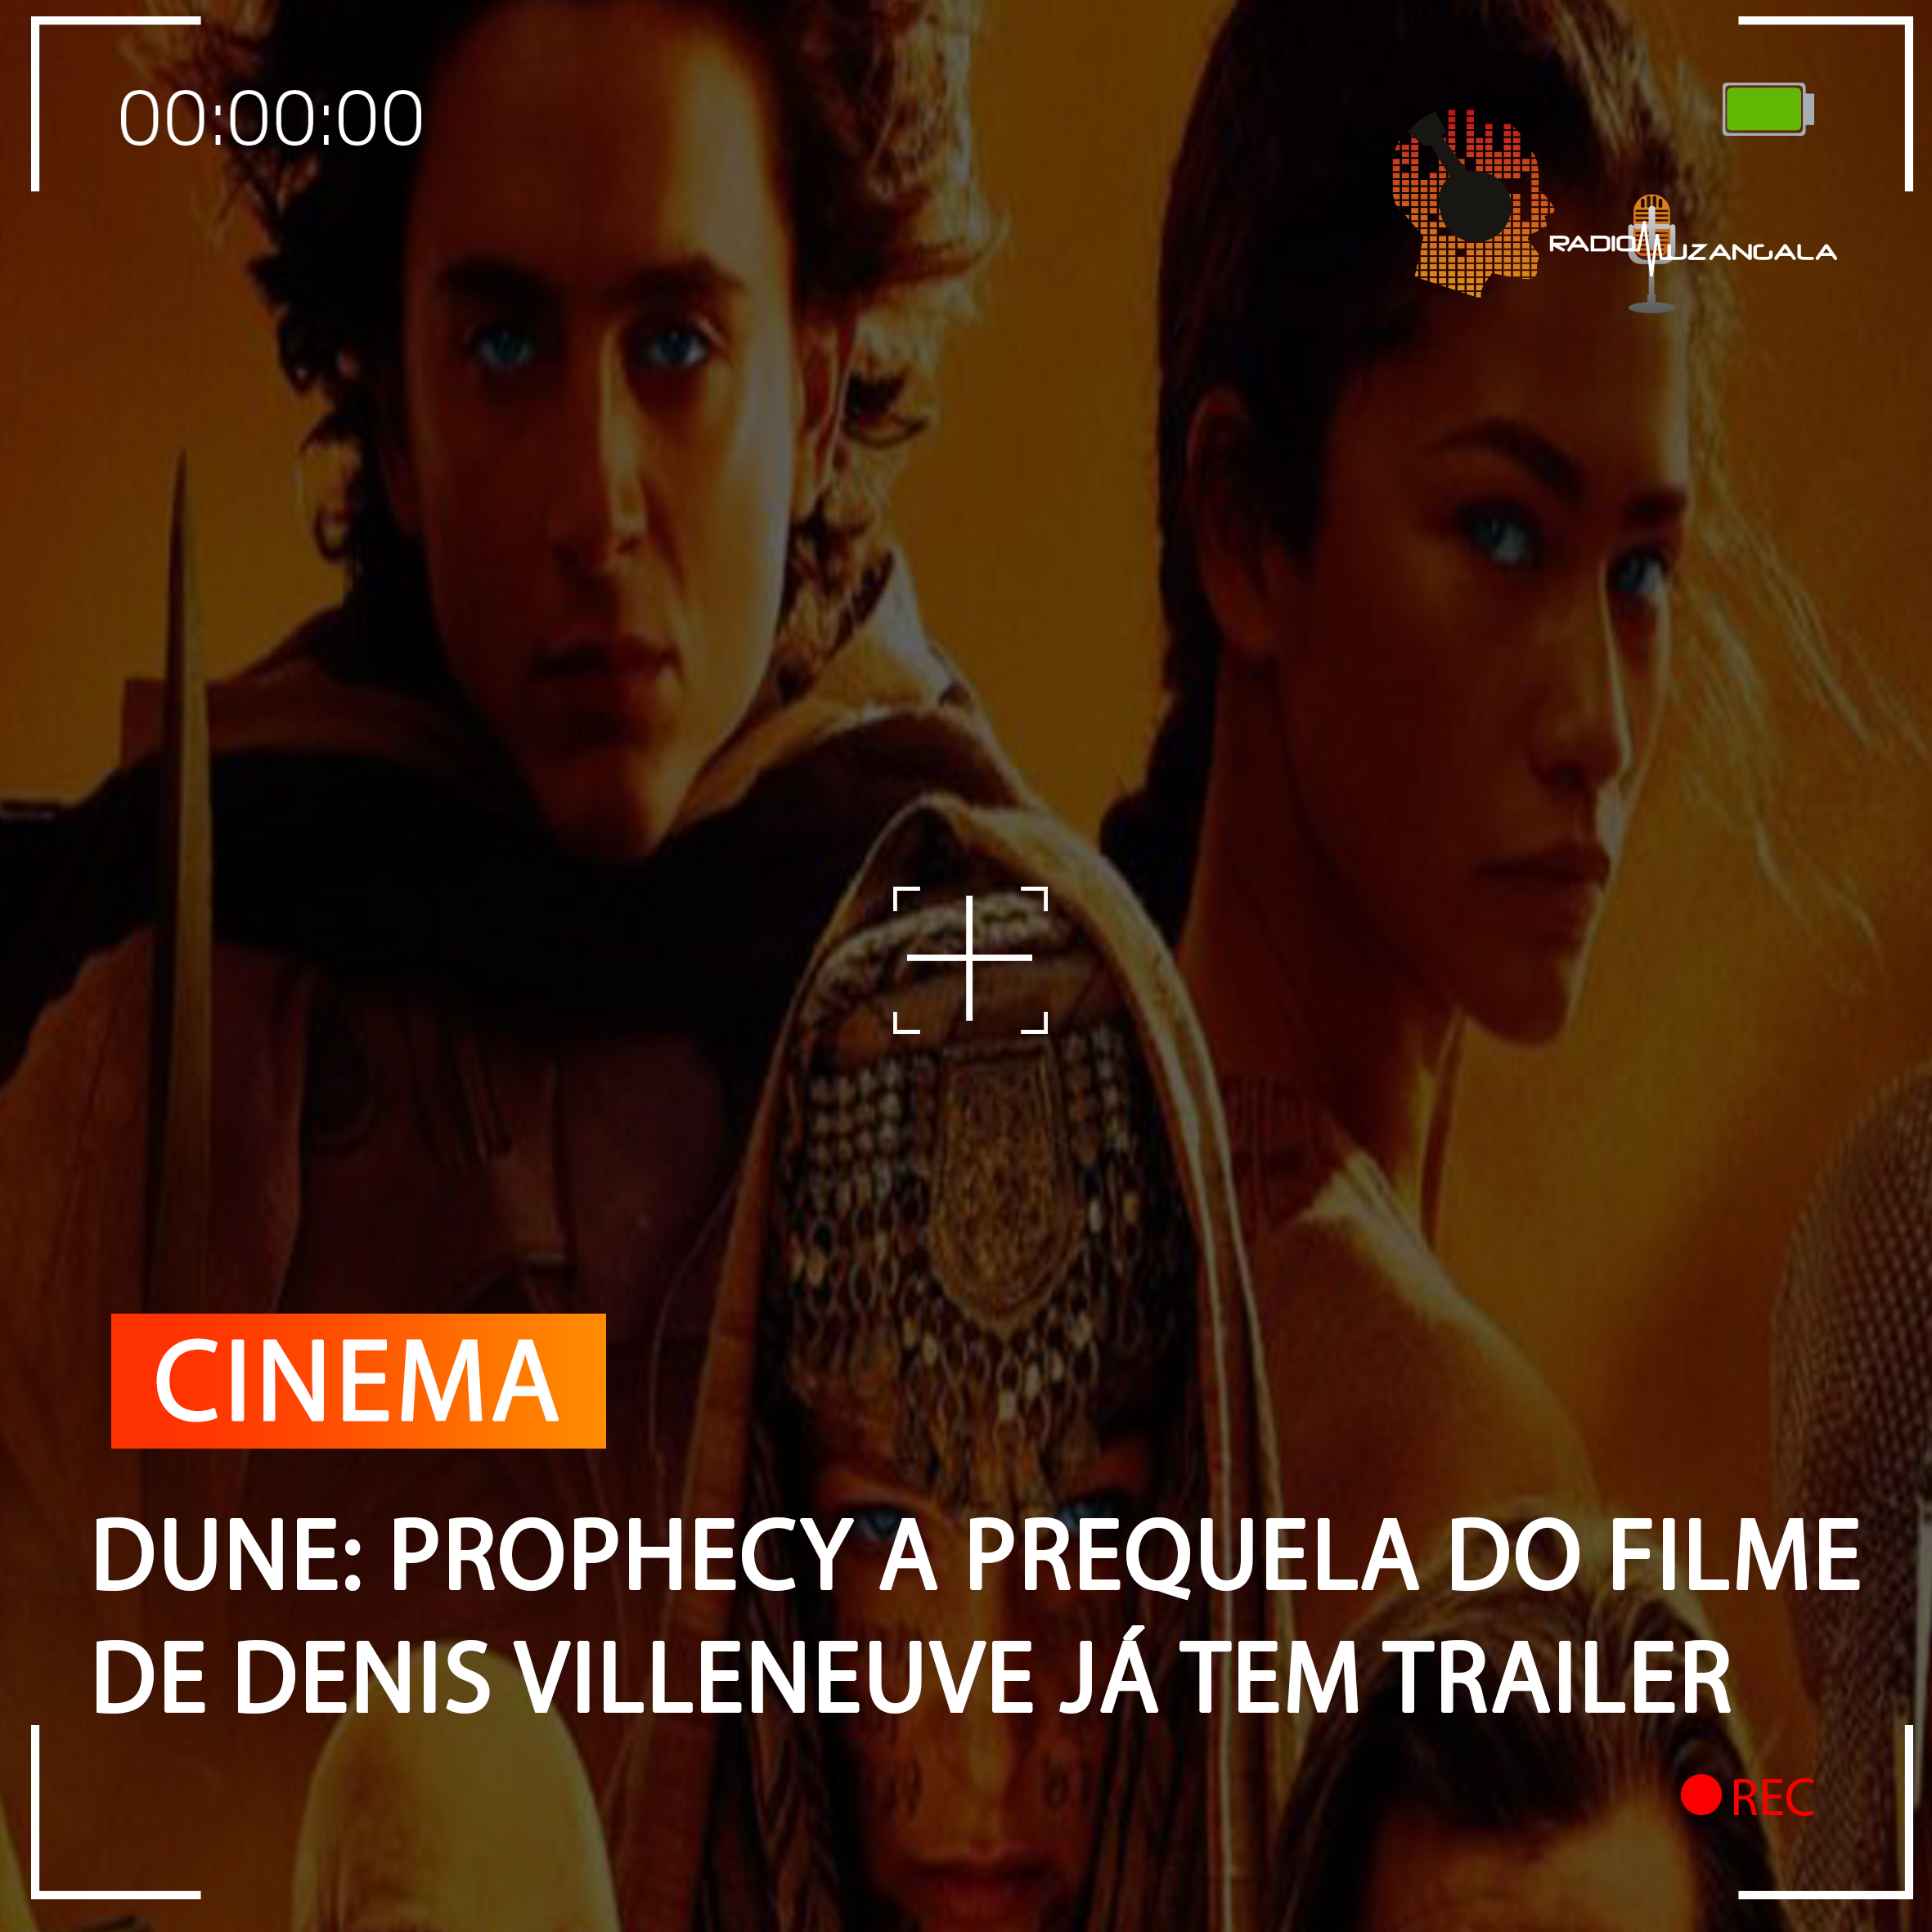  “DUNE: PROPHECY” A PREQUELA DO FILME DE DENIS VILLENEUVE JÁ TEM TRAILER